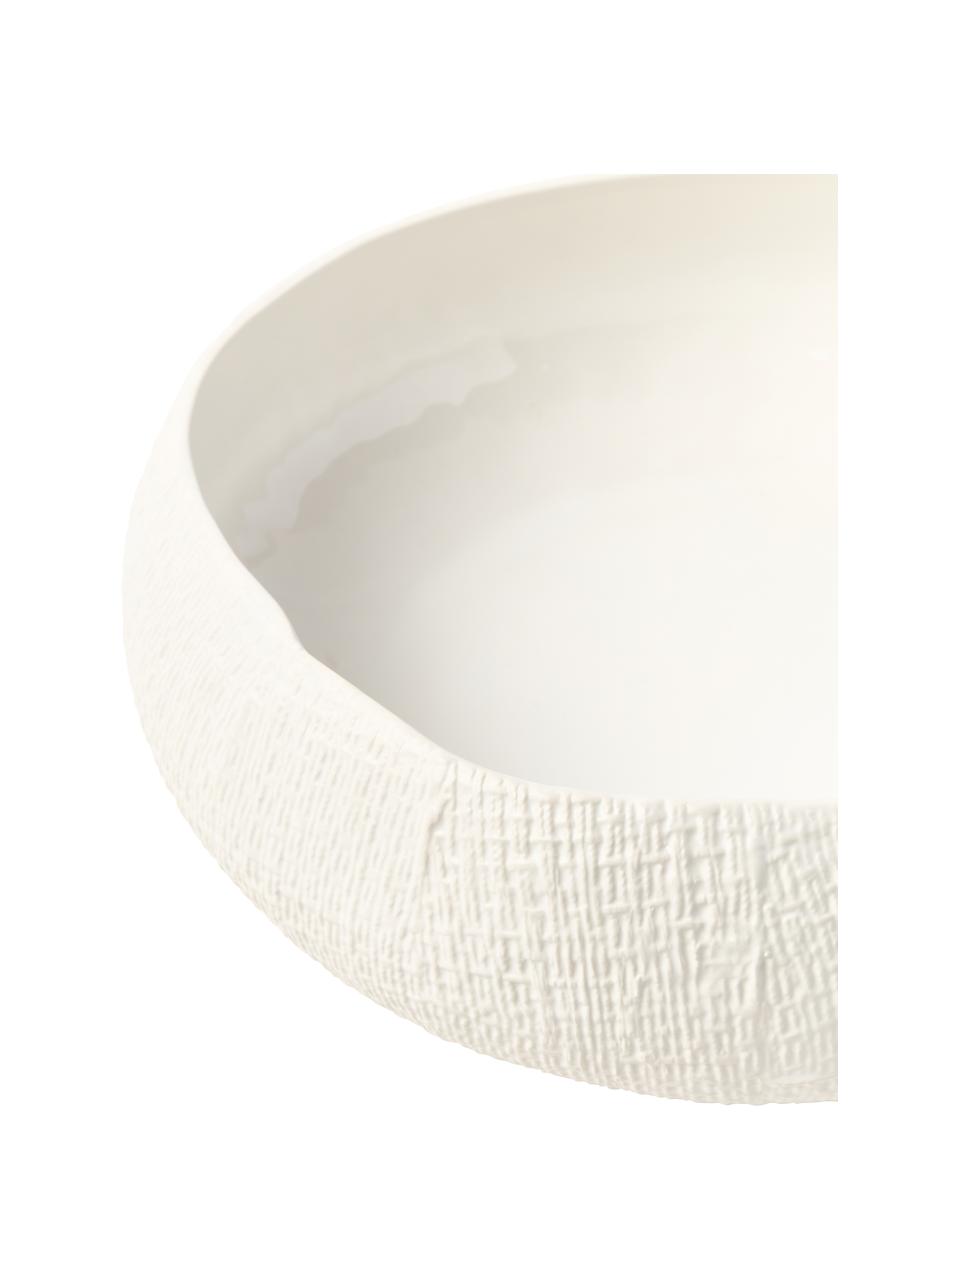 Handgefertigte Keramik-Schale Wendy, Keramik, Weiß, Ø 31 x H 10 cm